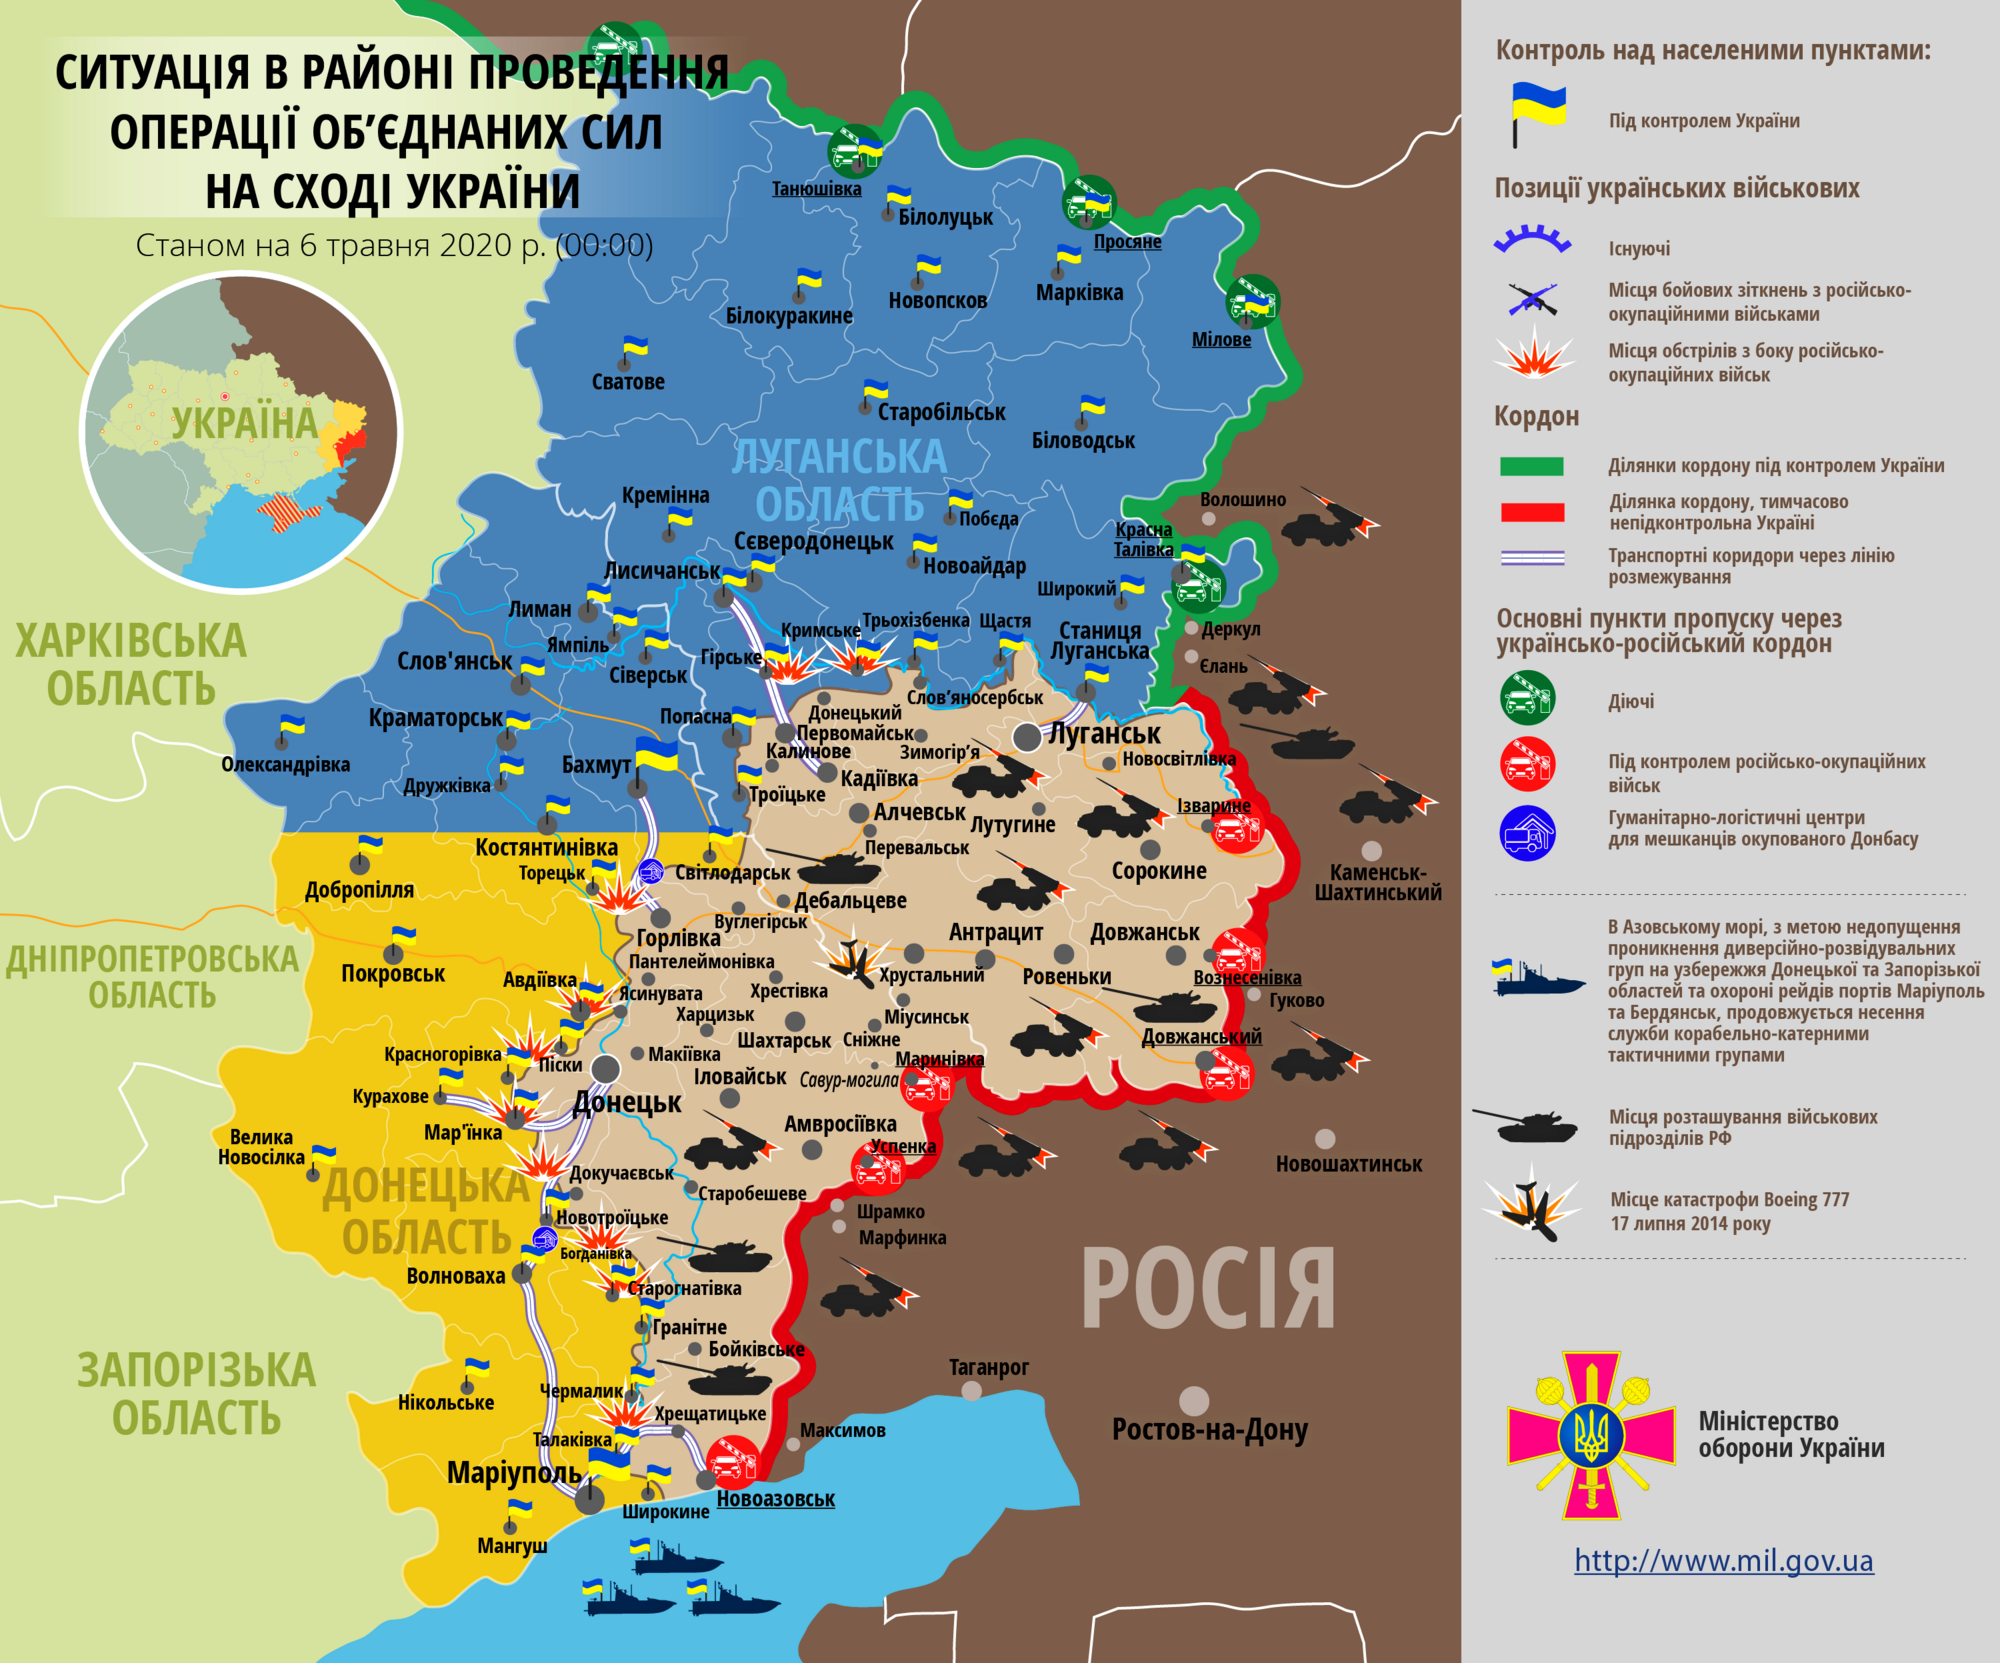 Ситуация в зоне проведения ООС на Донбассе 6 мая